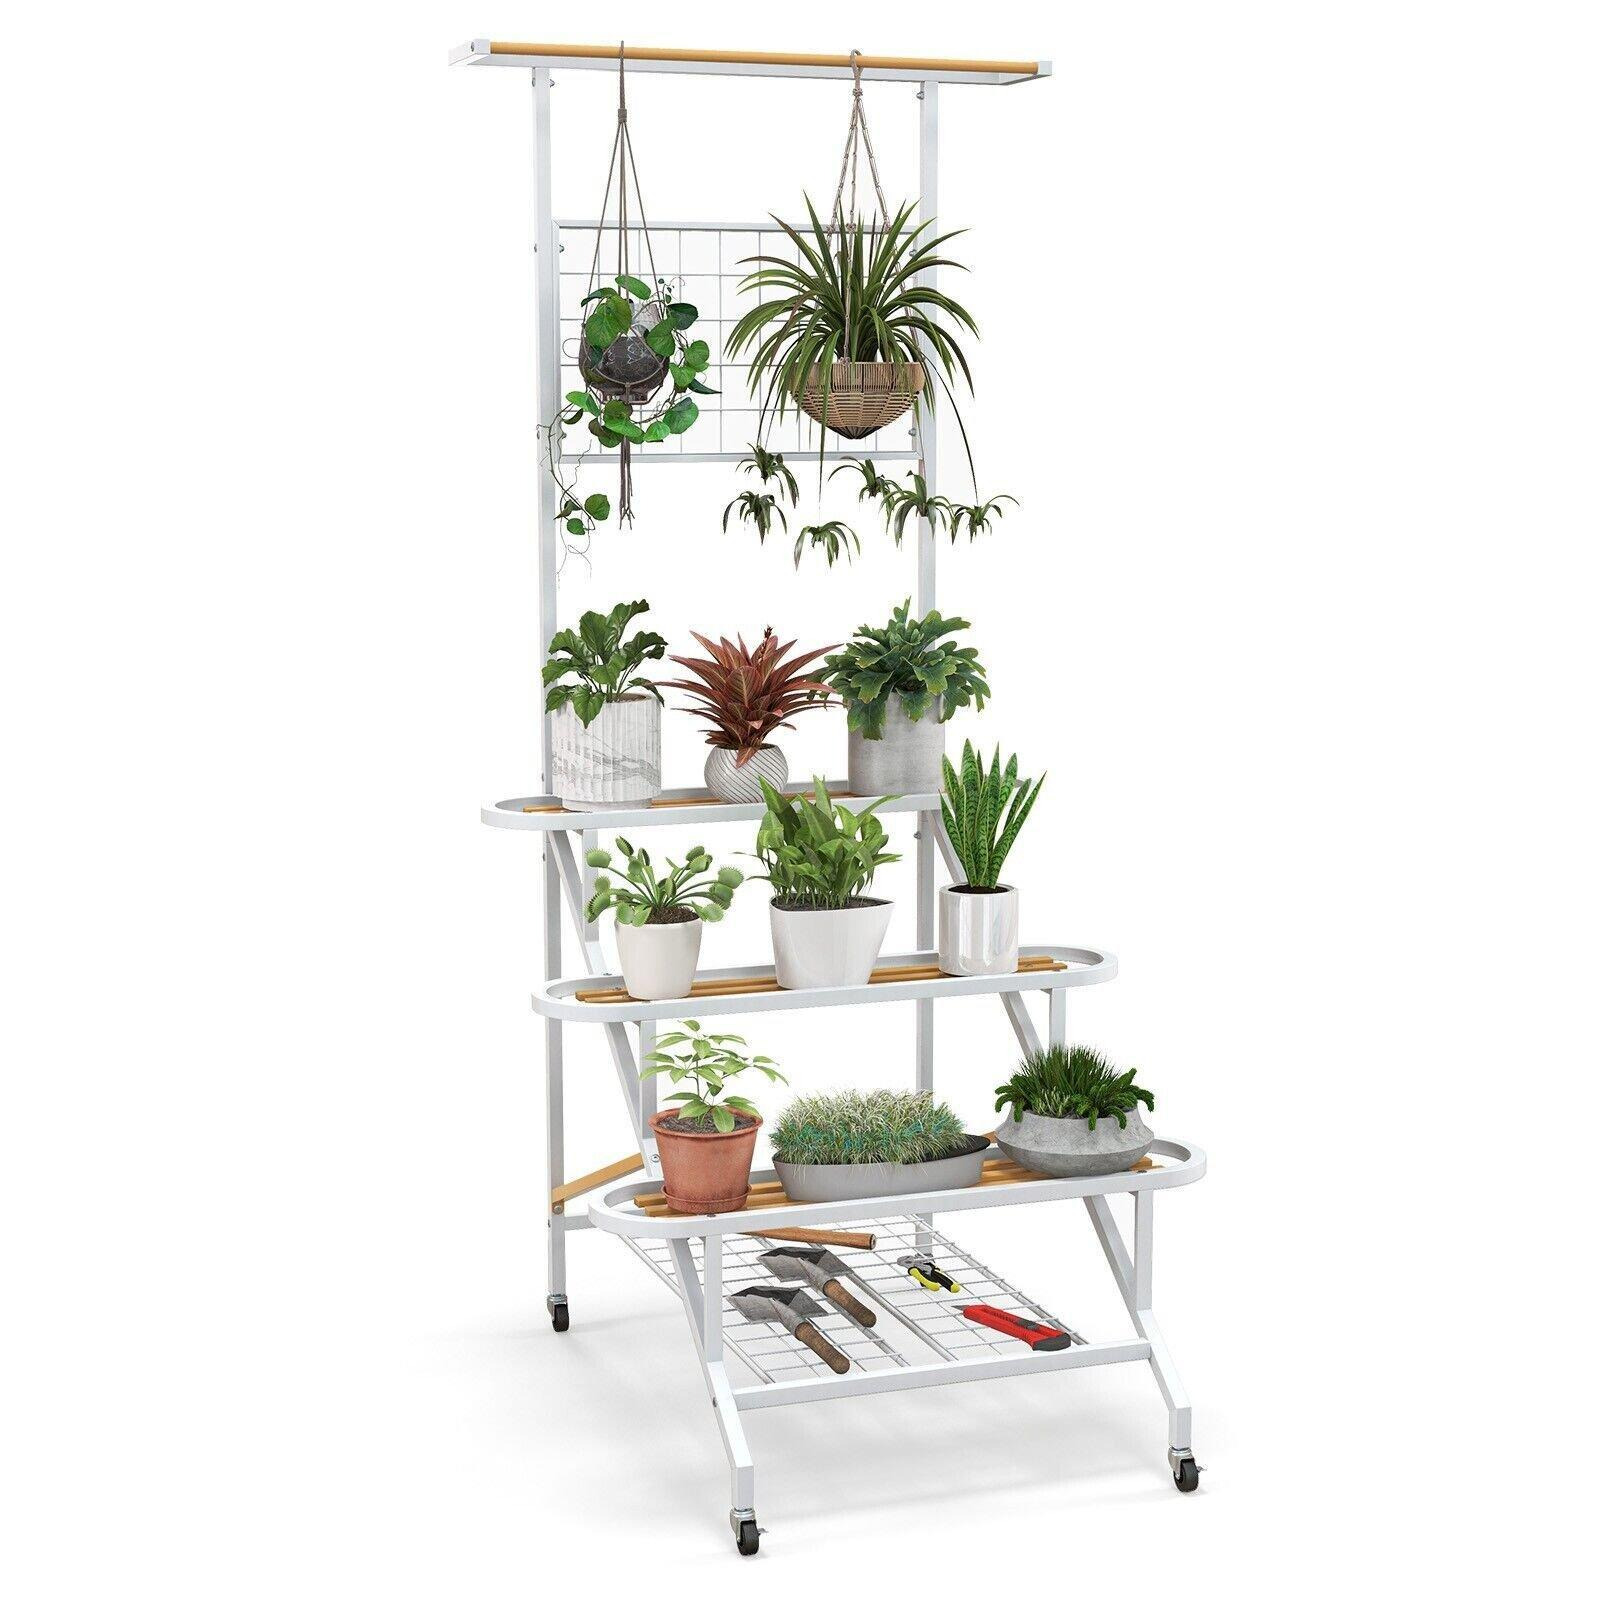 4-Tier Hanging Plant Stand Ladder Shelf W/Hanging Bar & Trellis Plant Holder - image 1